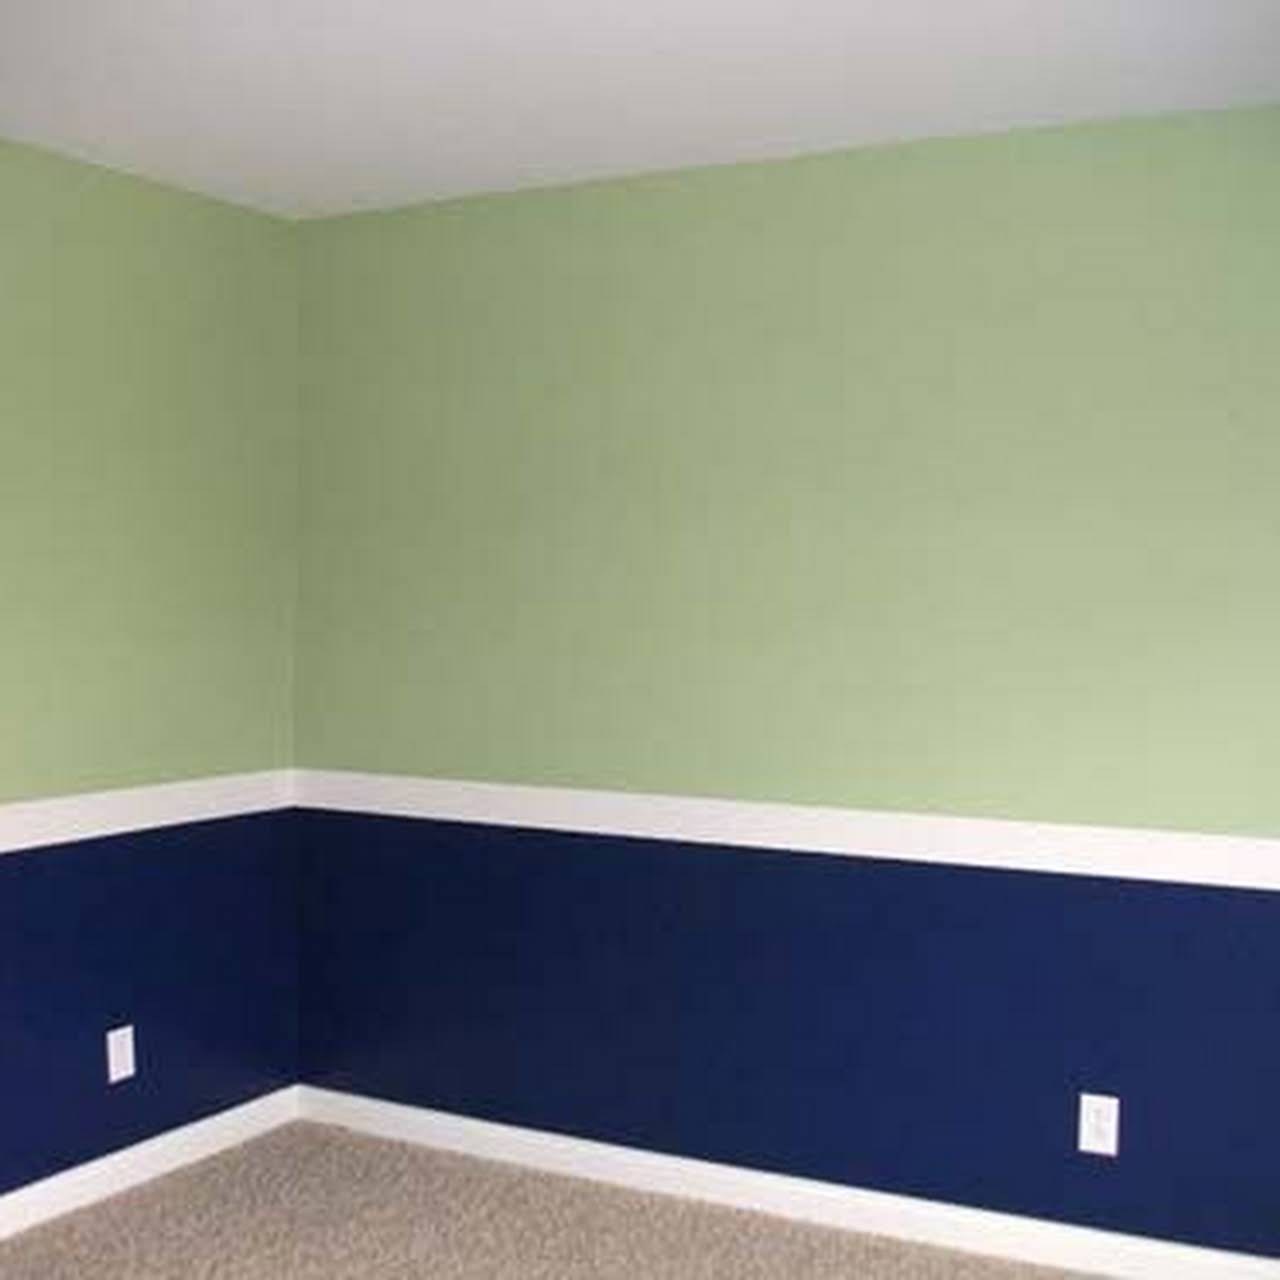 Покраска стен офиса в два цвета